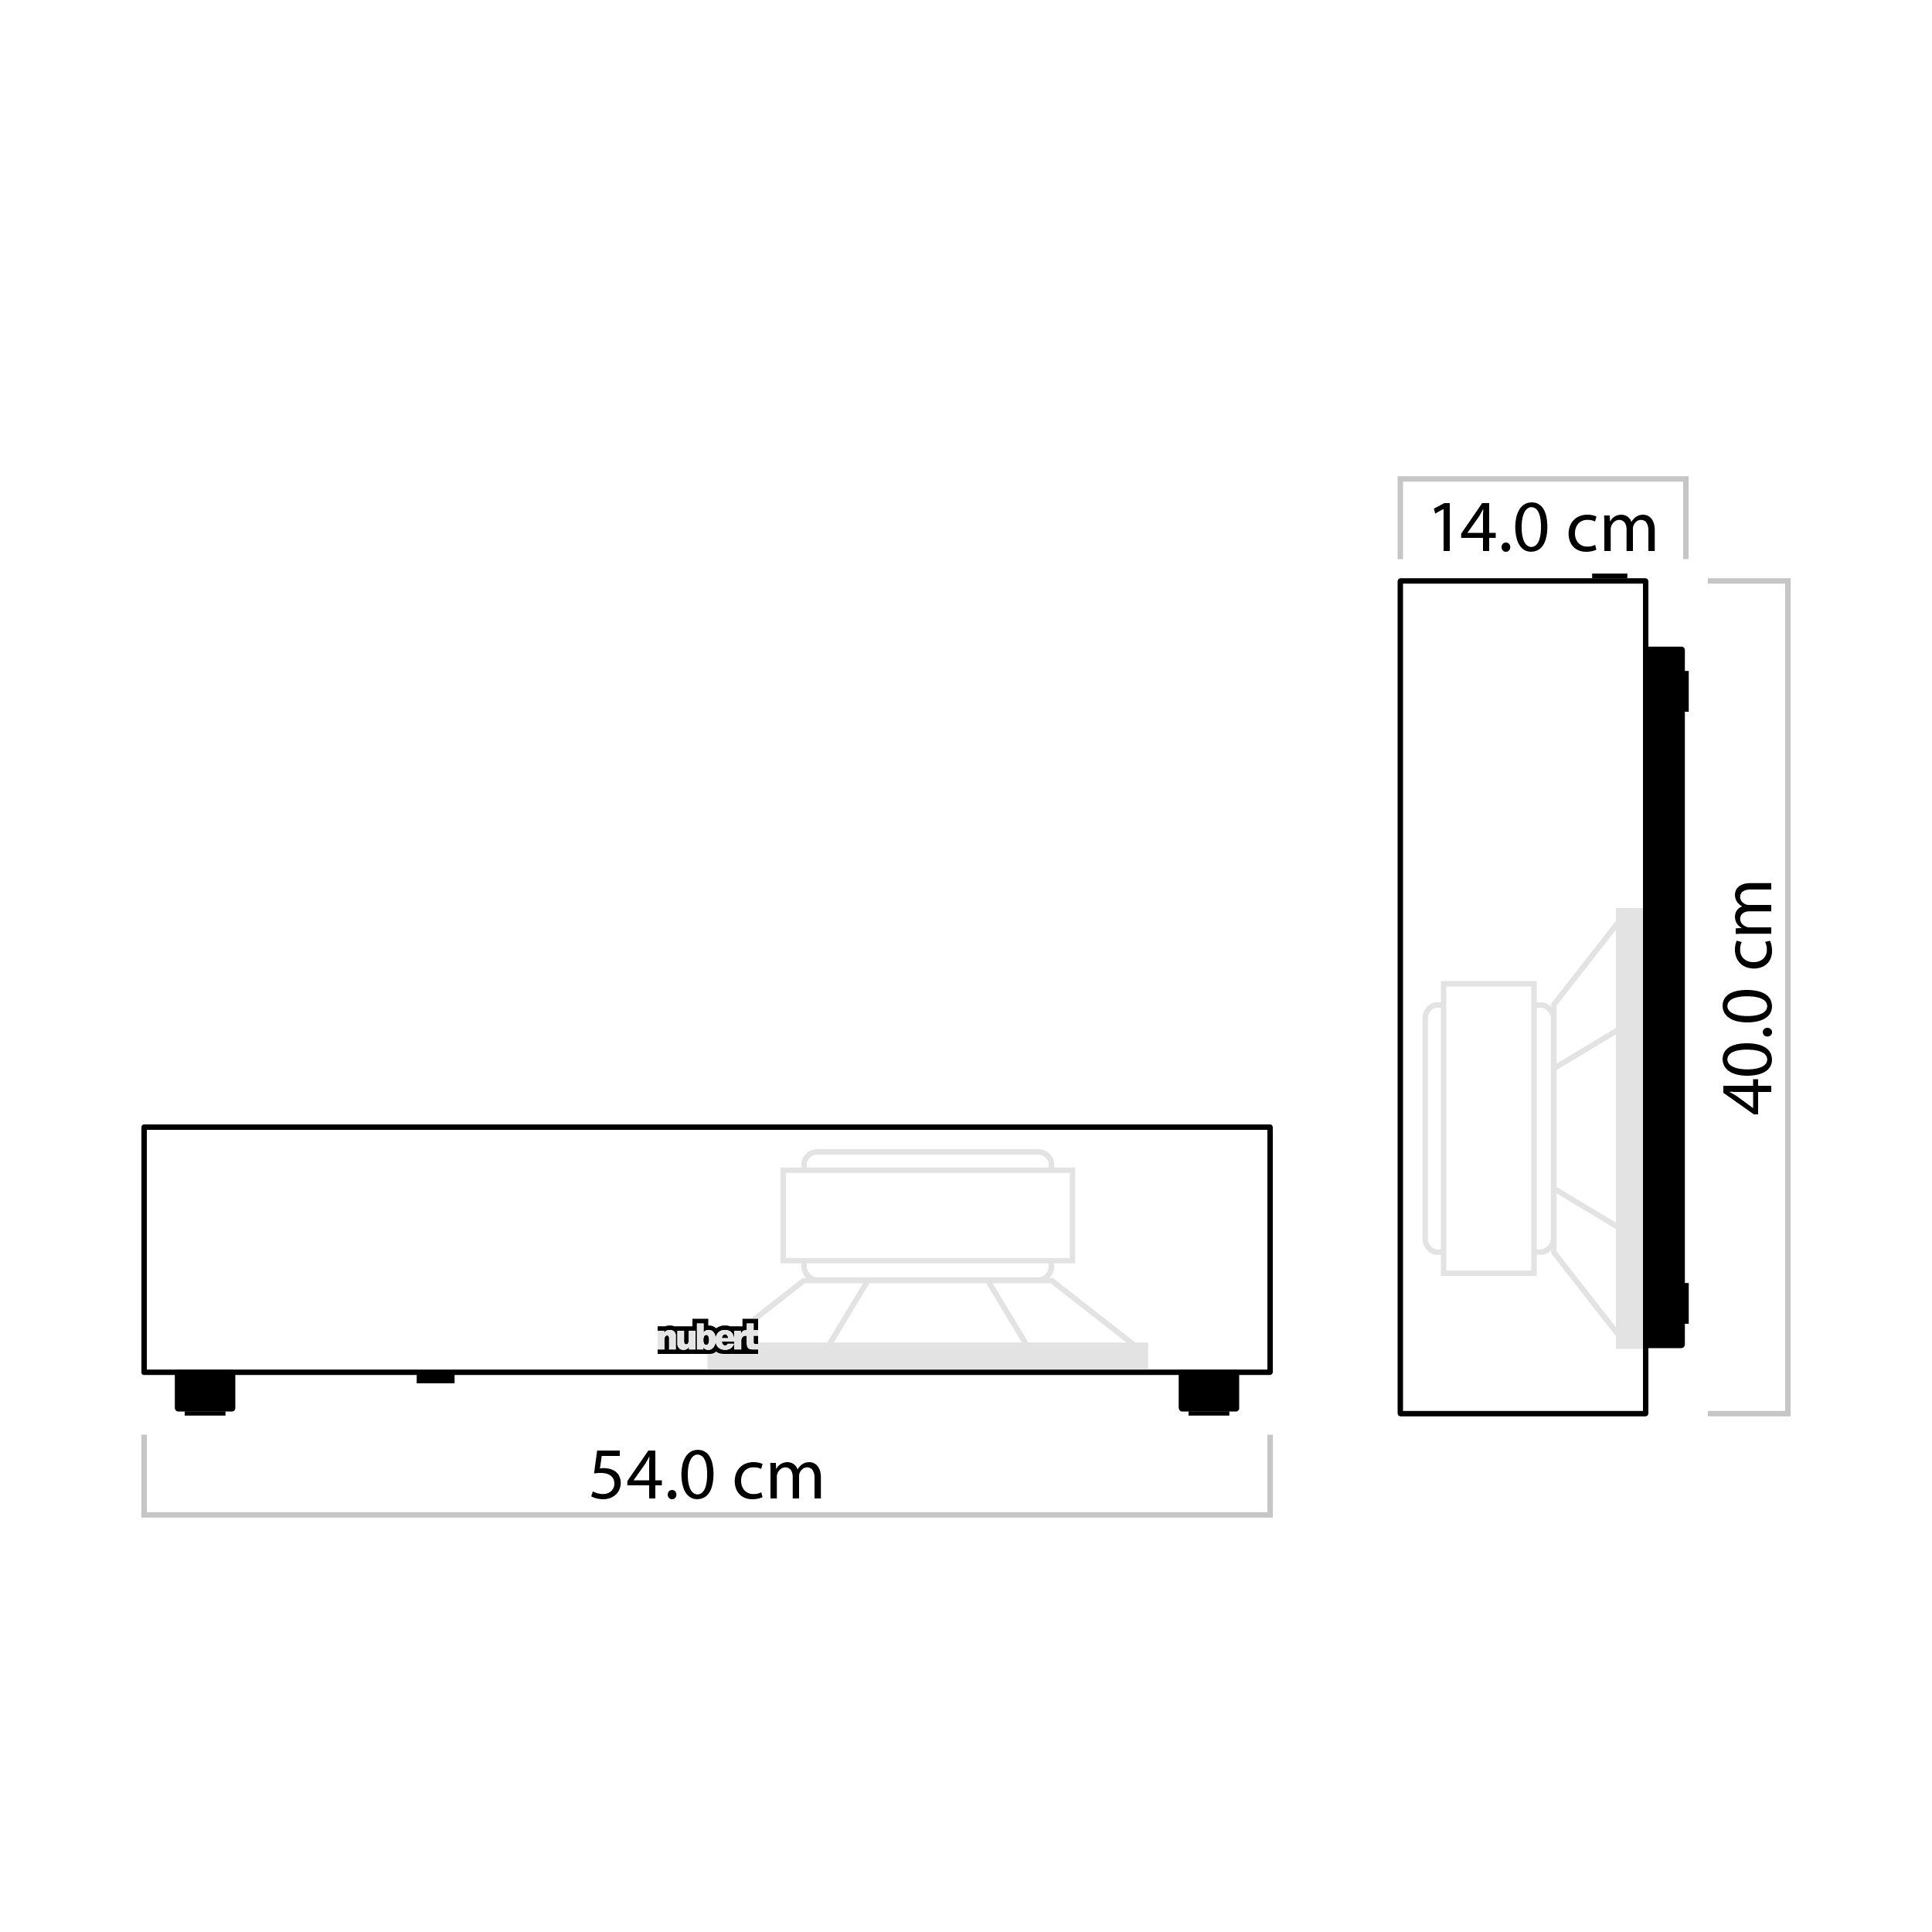 Hz) Weiß Mehrschichtlack Nubert nuSub (250 34 slim Subwoofer W, XW-800